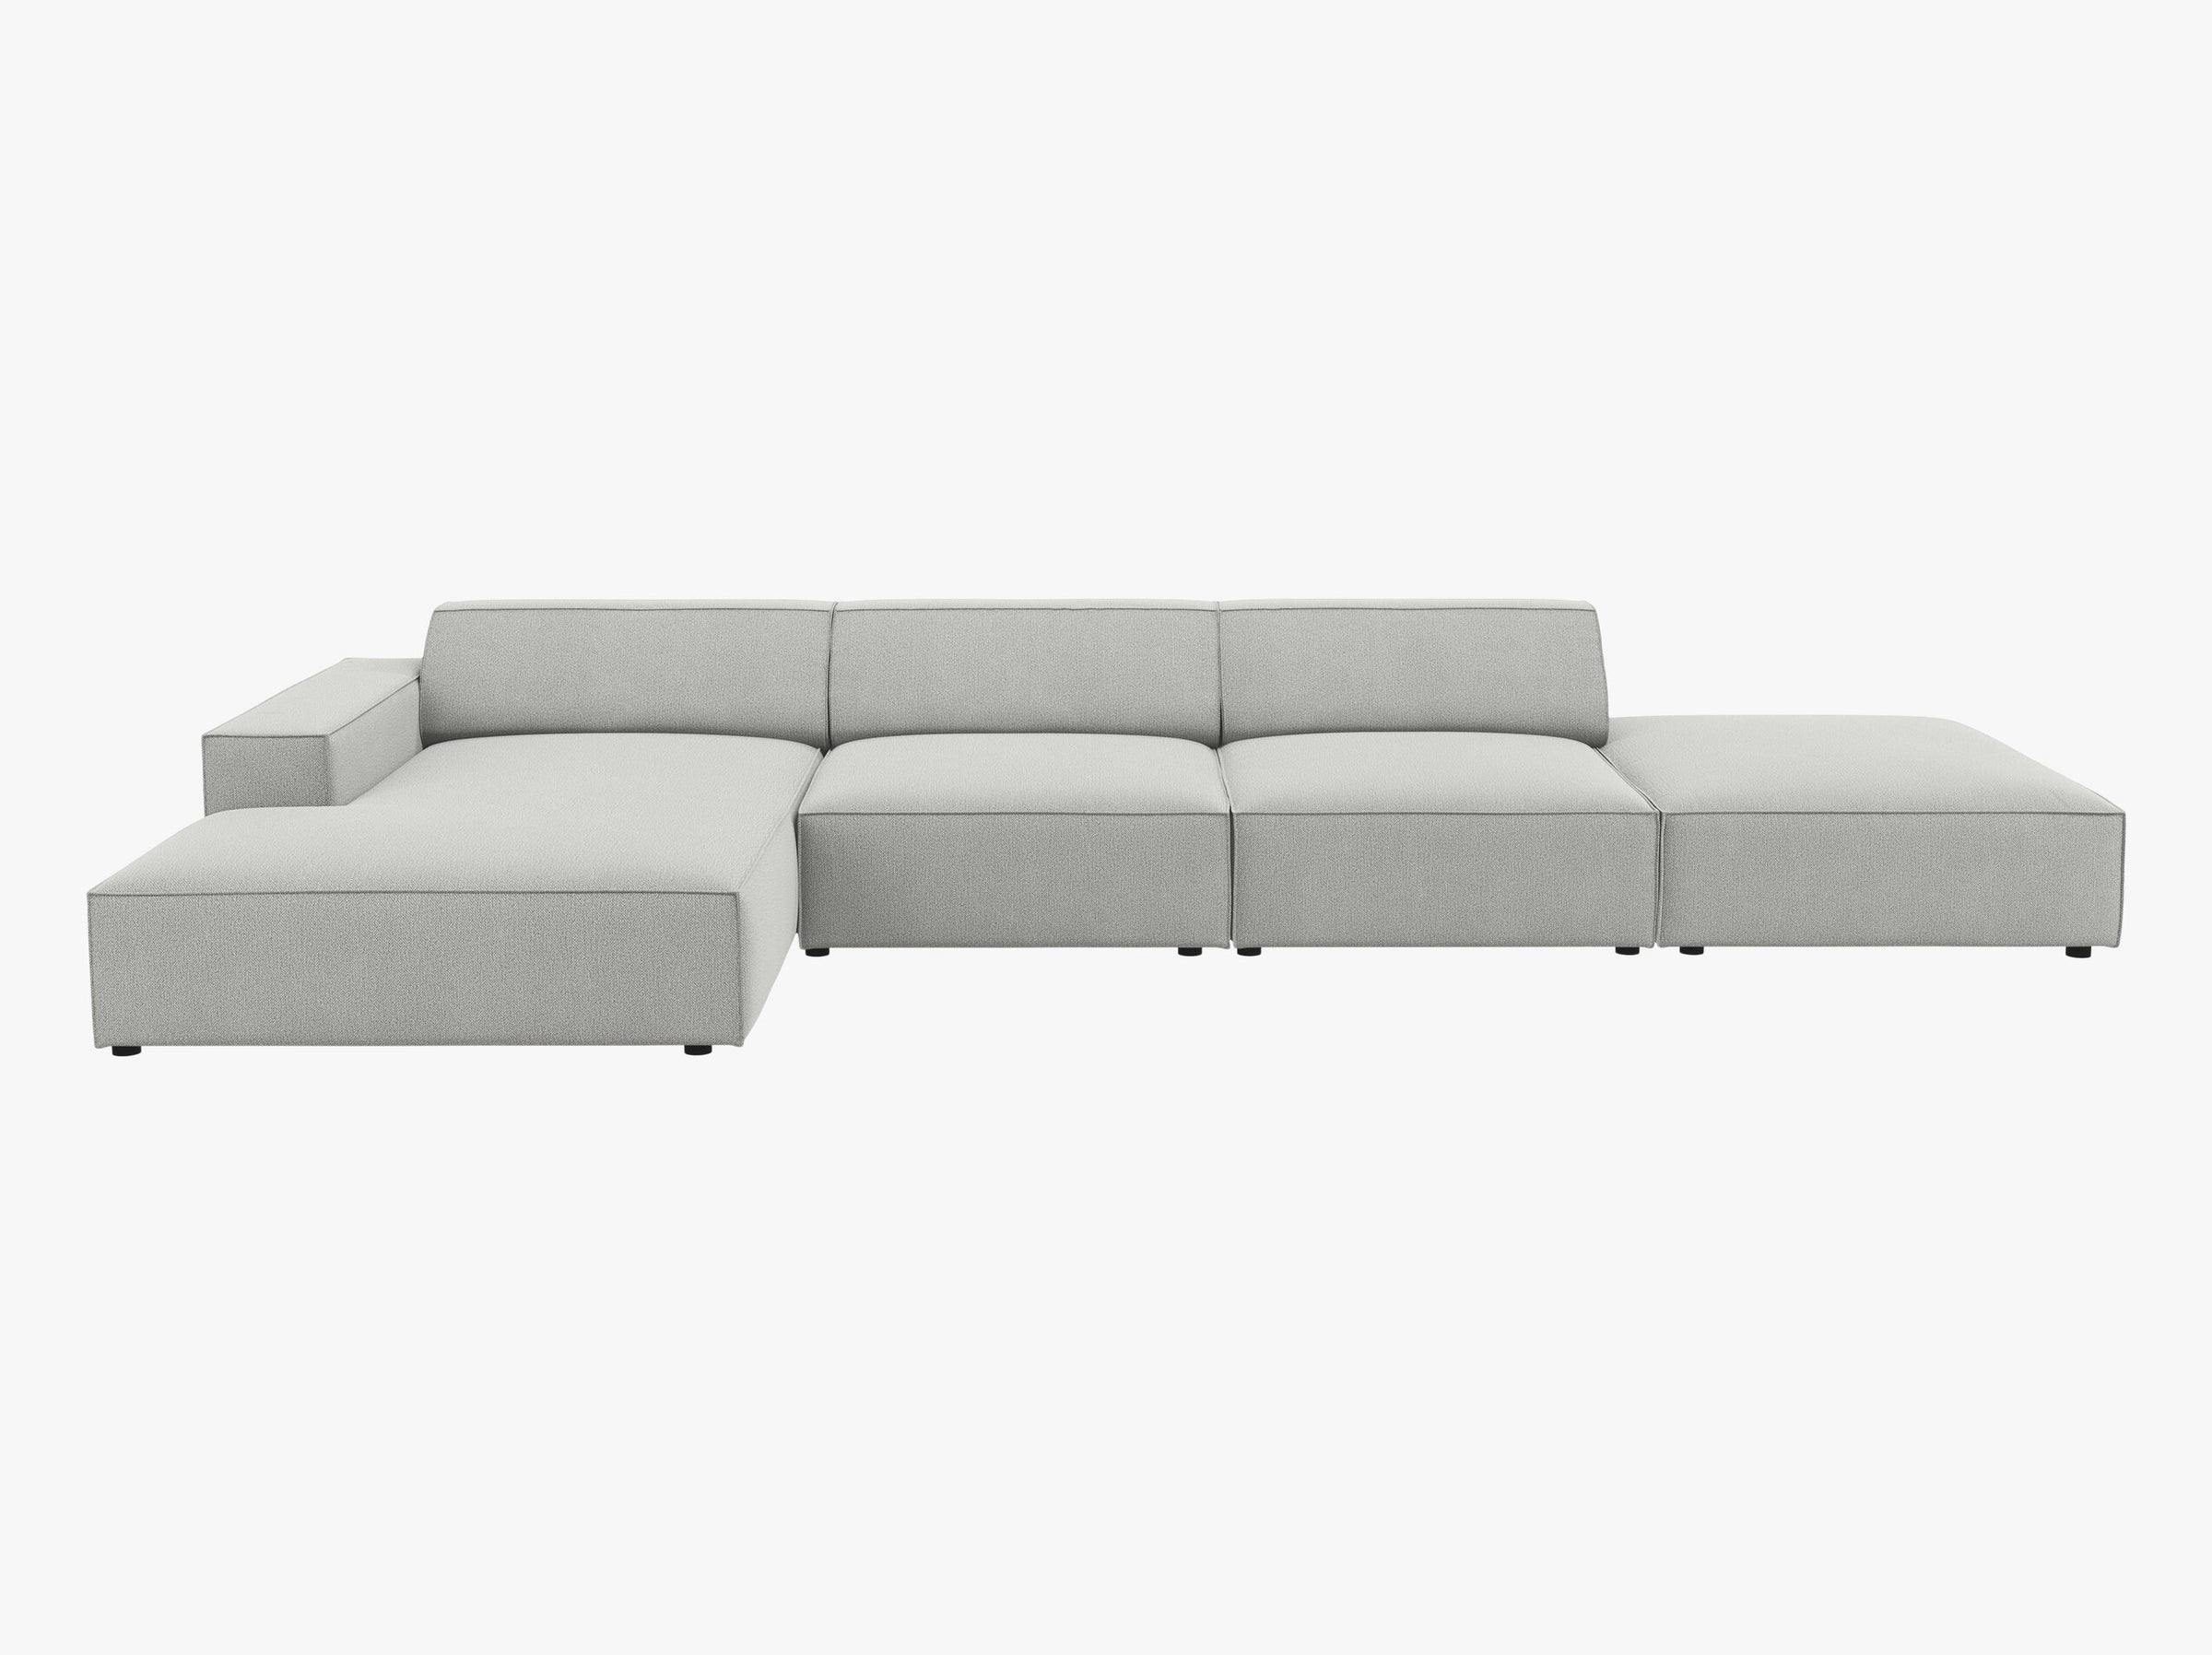 Jodie sofás tejido estructurado gris claro